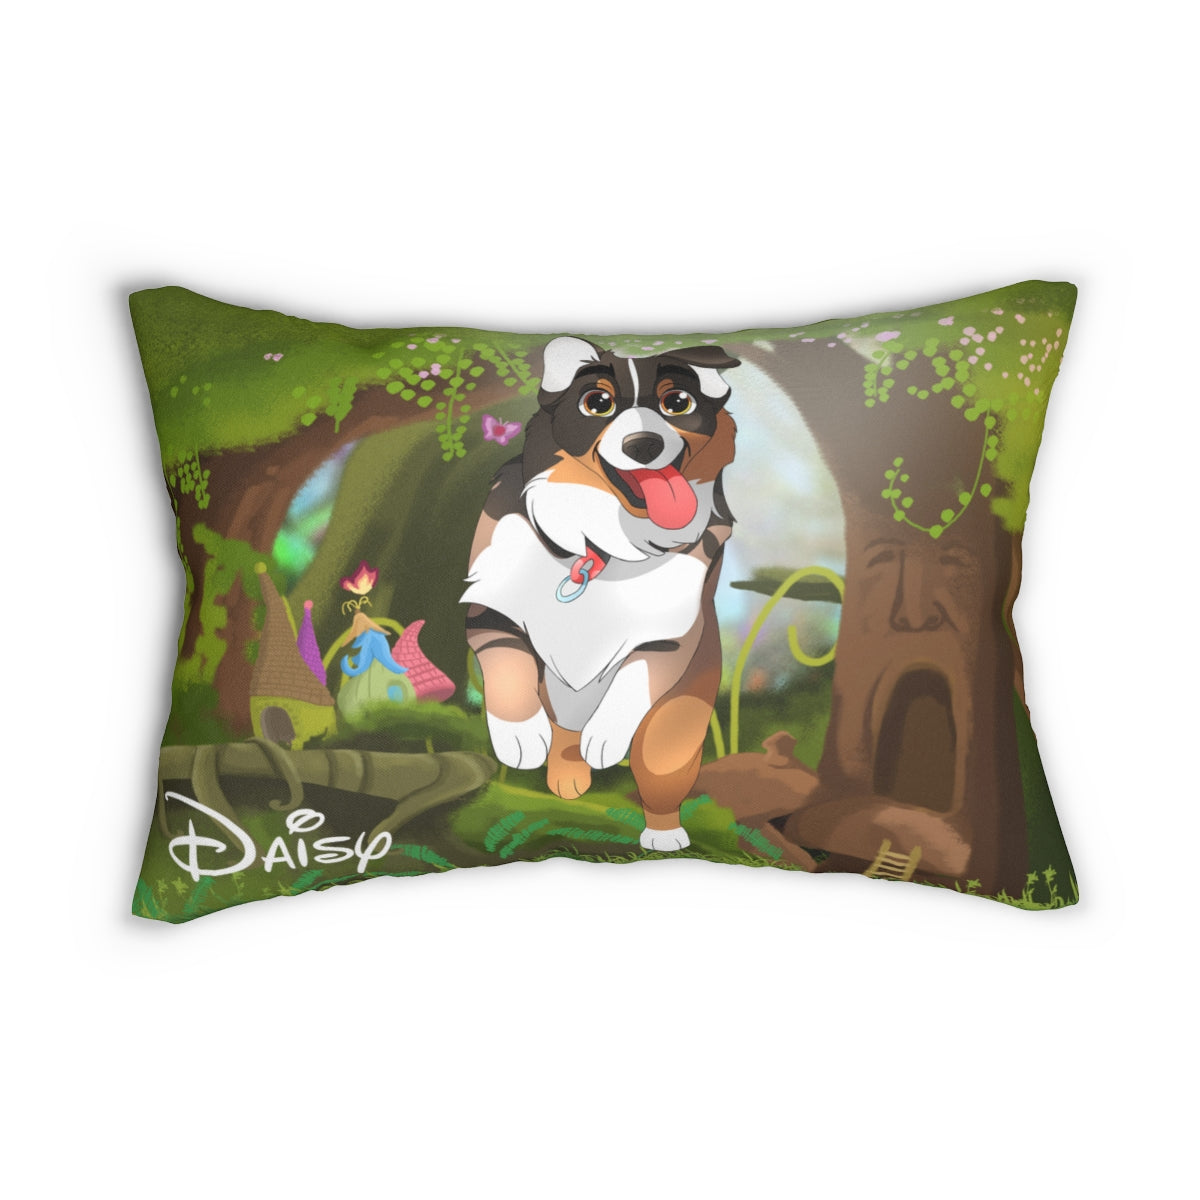 Hand-drawn Disney Style Pet Lumbar Pillow (14” x 20”)